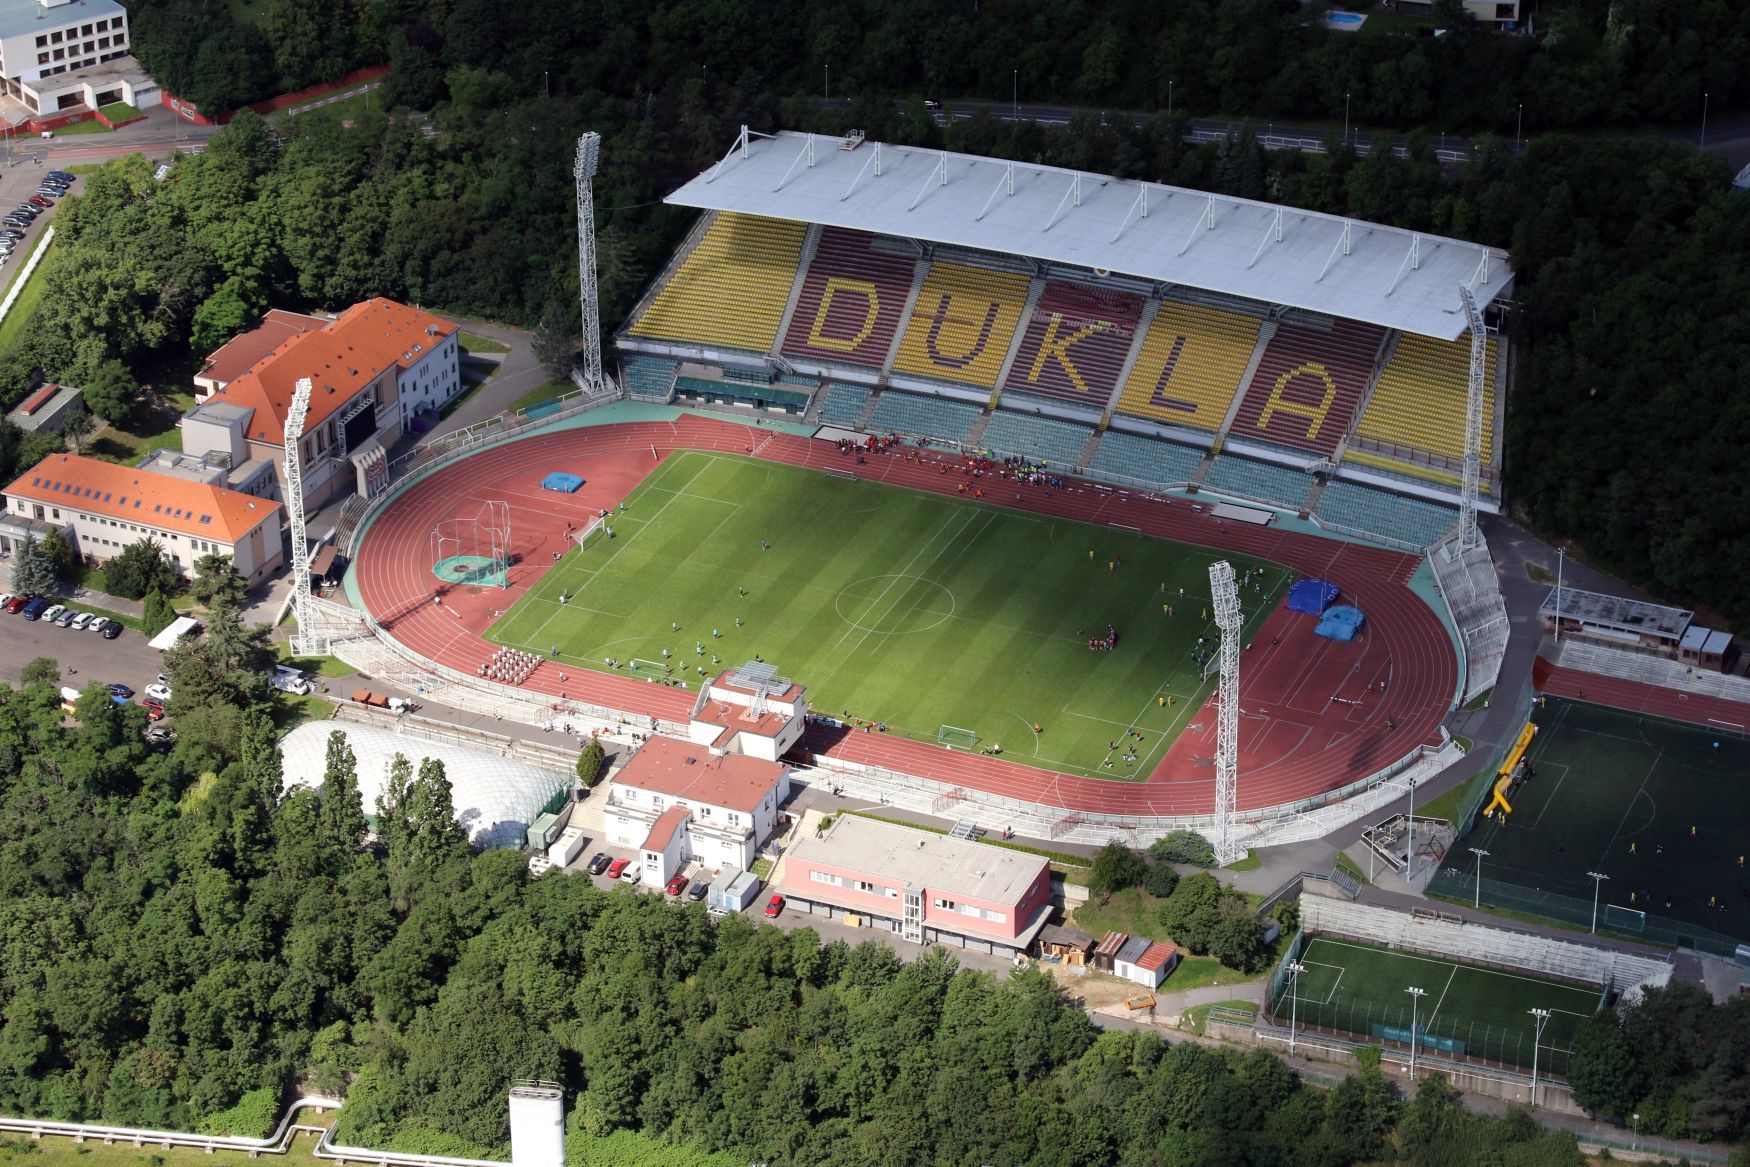 Stadion Dukla Praha (Juliska) - 2016